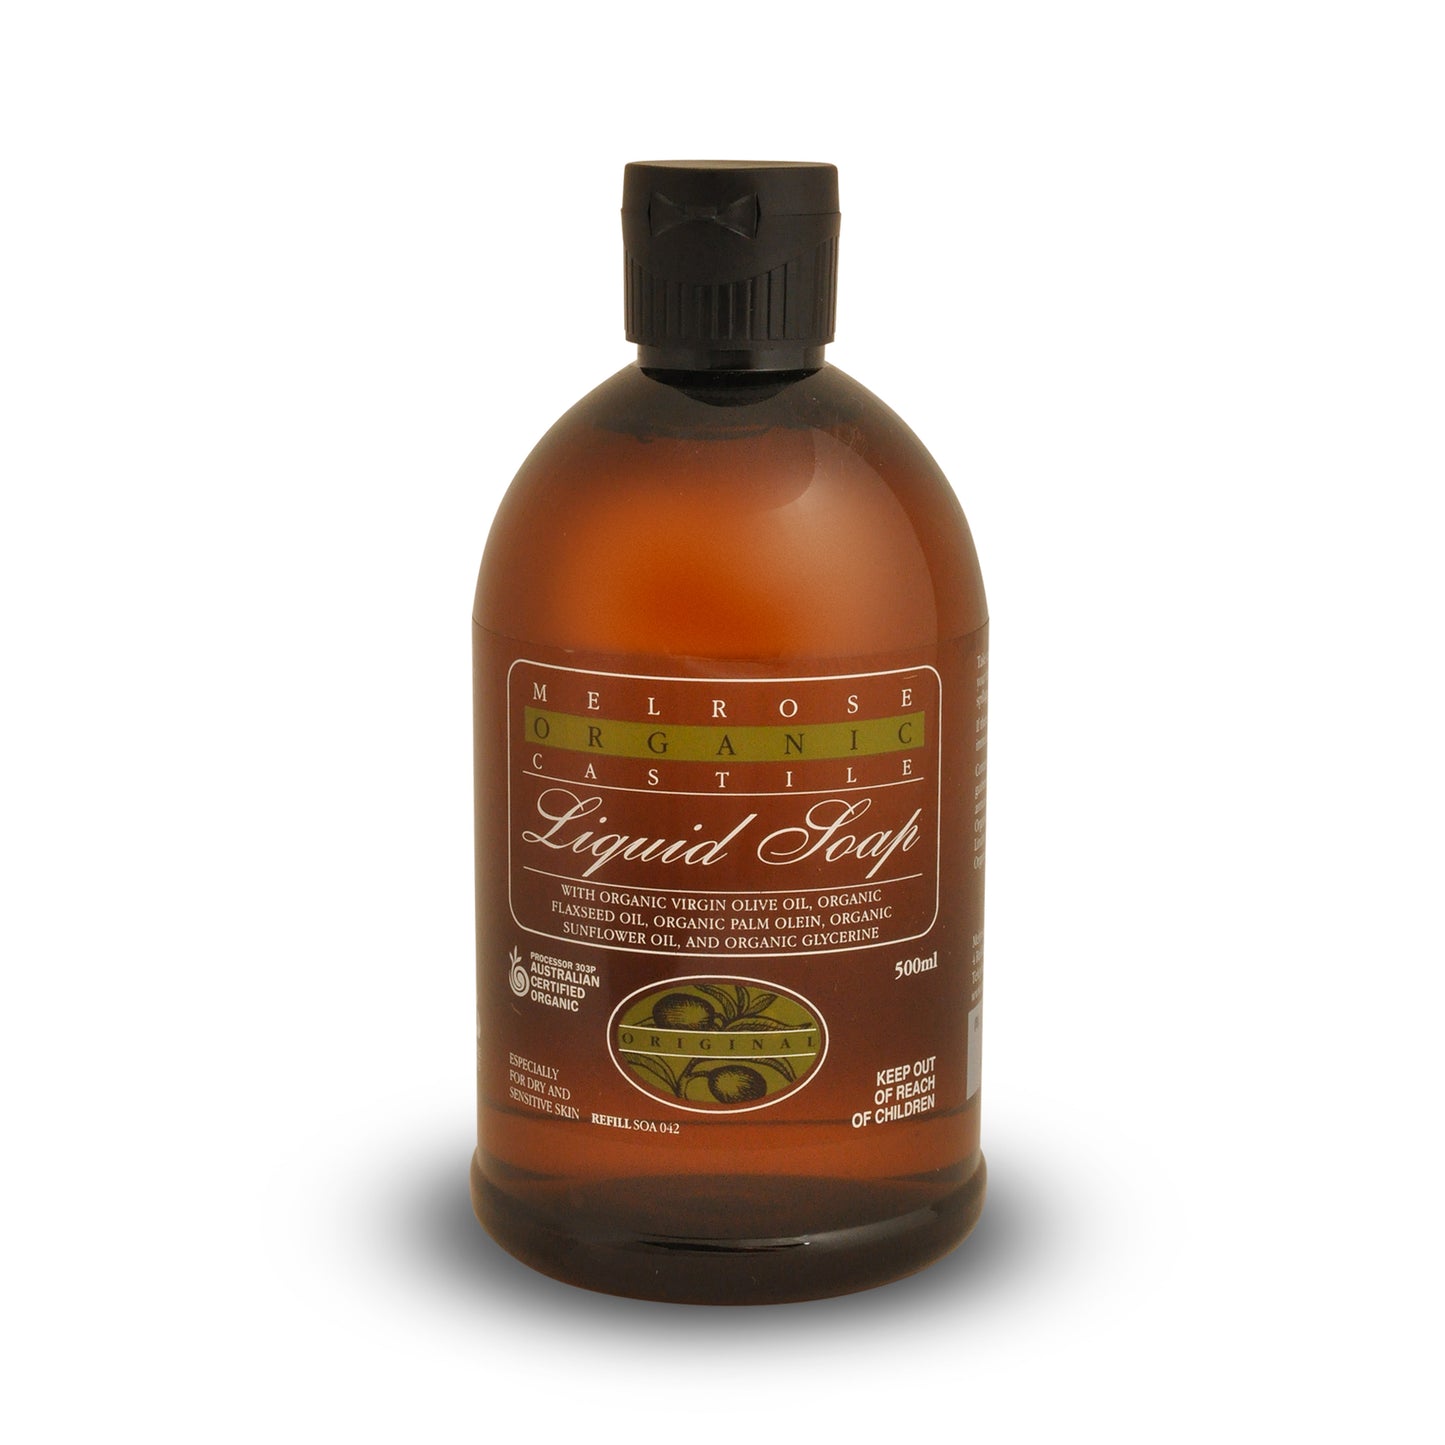 Melrose Organic Original Castile Liquid Soap Refill 500ml